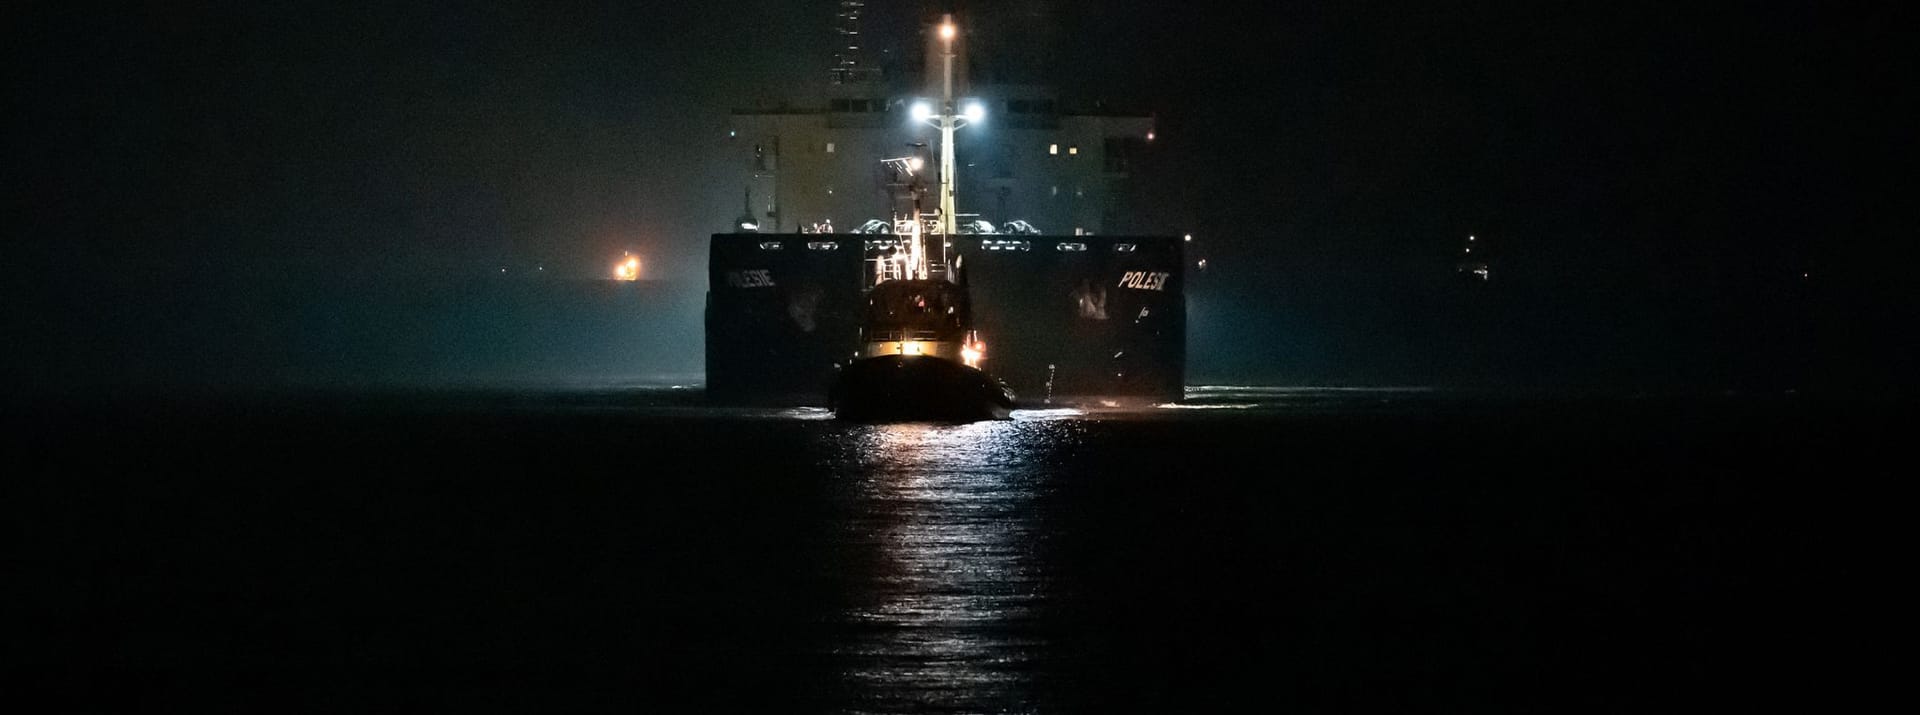 Cuxhaven: Das Frachtschiff «Polesie» wird in der Nacht von zwei Schleppern in der Elbmündung nach Cuxhaven geleitet. Nach der Kollision von zwei Frachtern auf der Nordsee vor Helgoland sind die vier vermissten Menschen der siebenköpfigen Besatzung nicht gefunden worden.